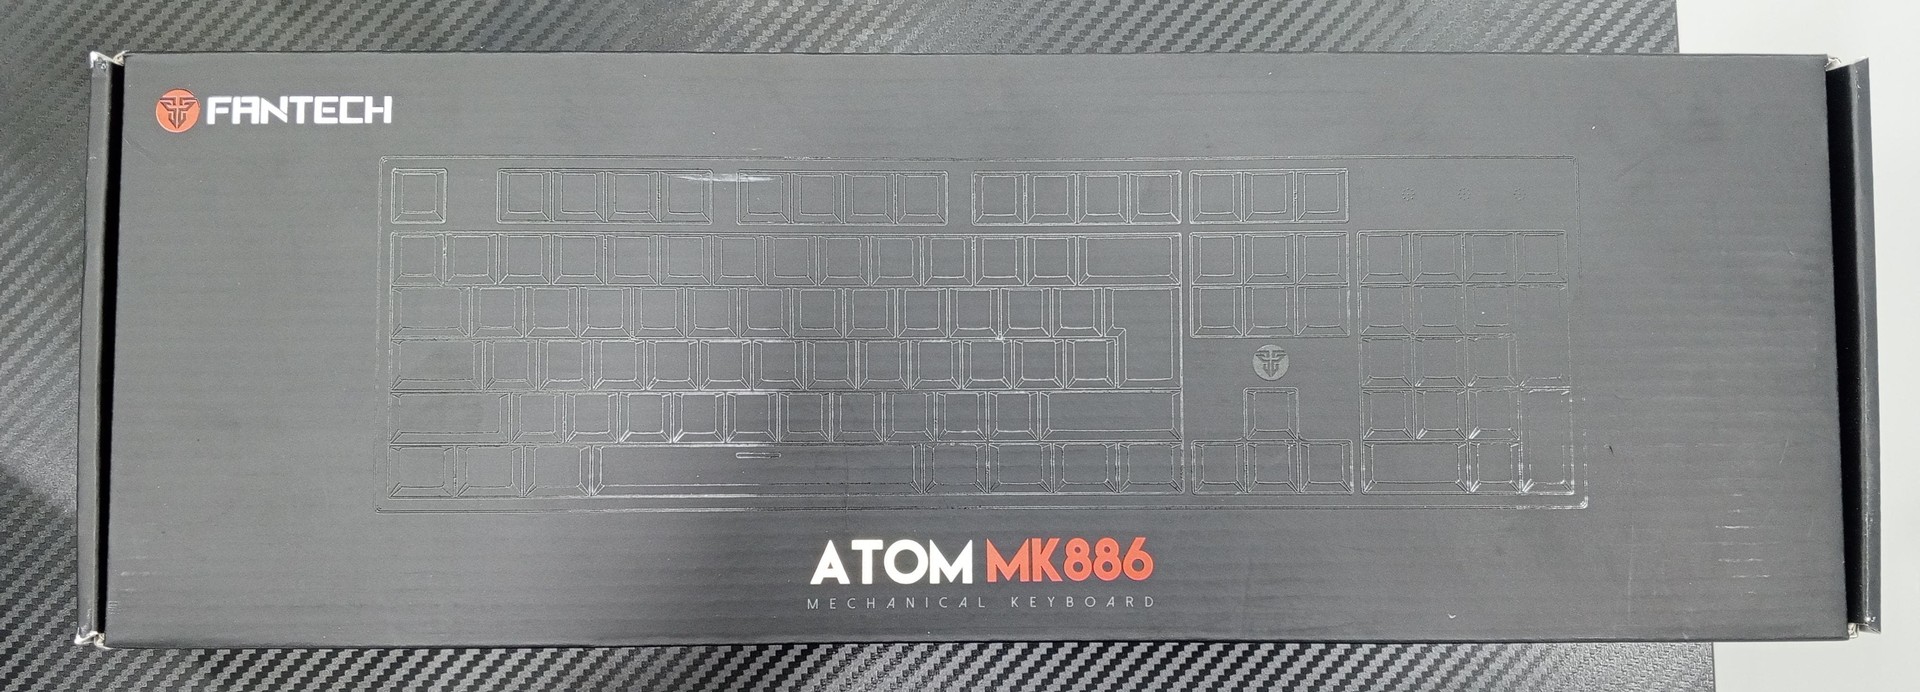 computadoras y laptops - Teclado Fantech MK886 ATOM 0